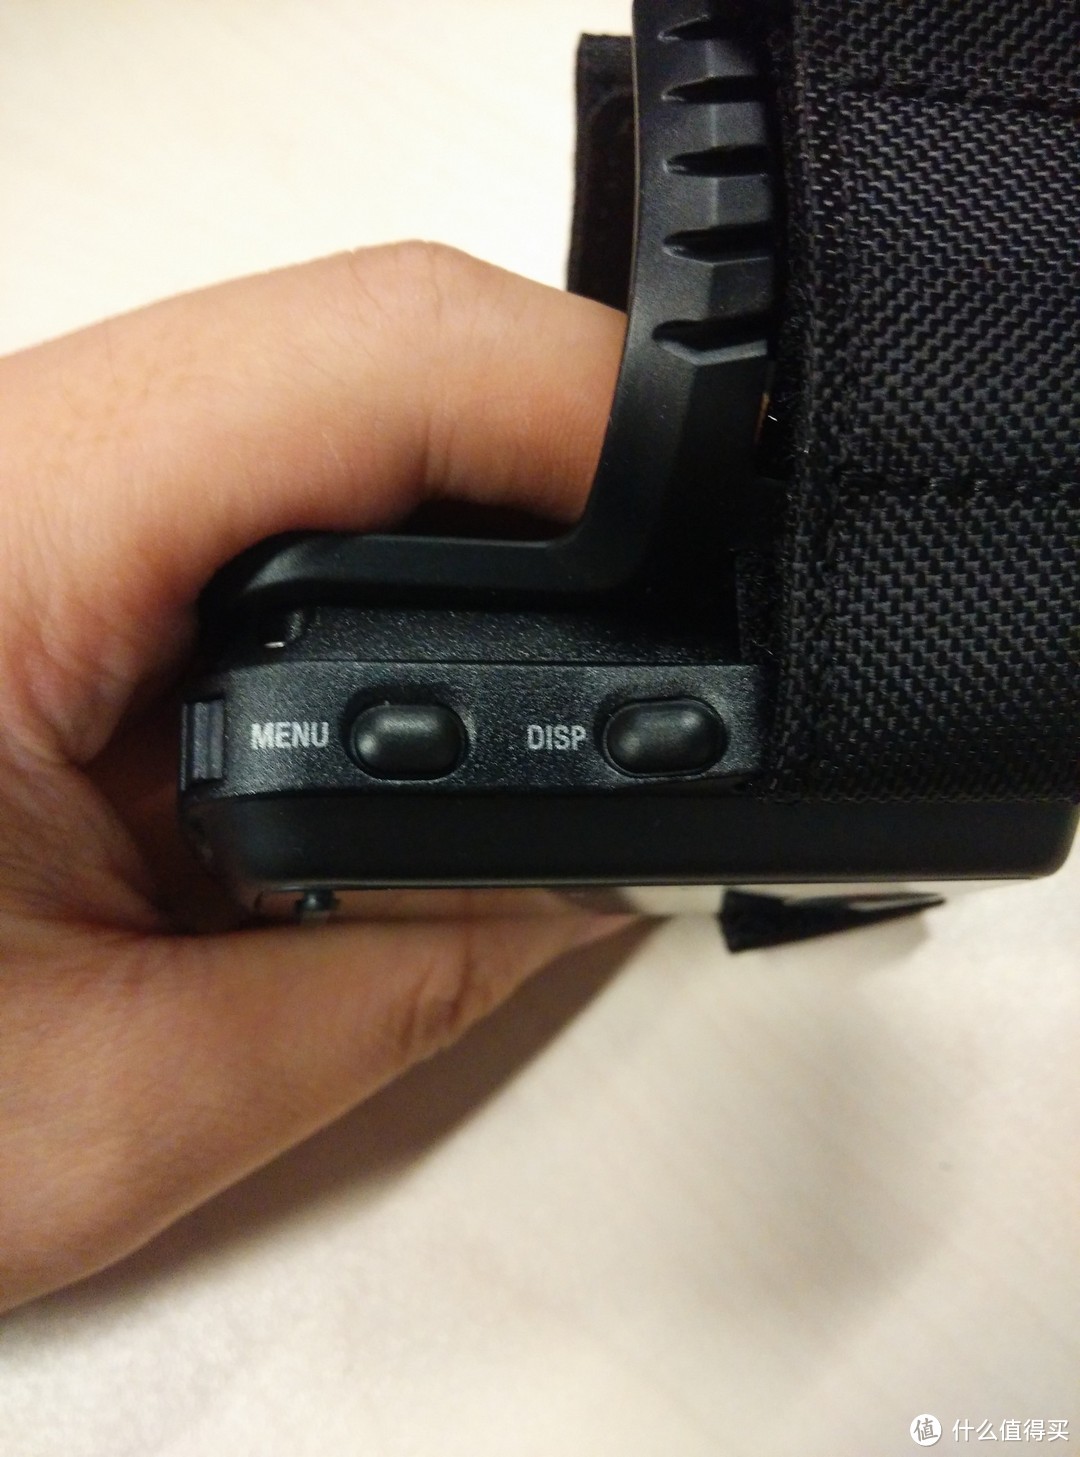 信仰再度充值：SONY 索尼 HDR-AS200VT 运动摄像机 多图开箱